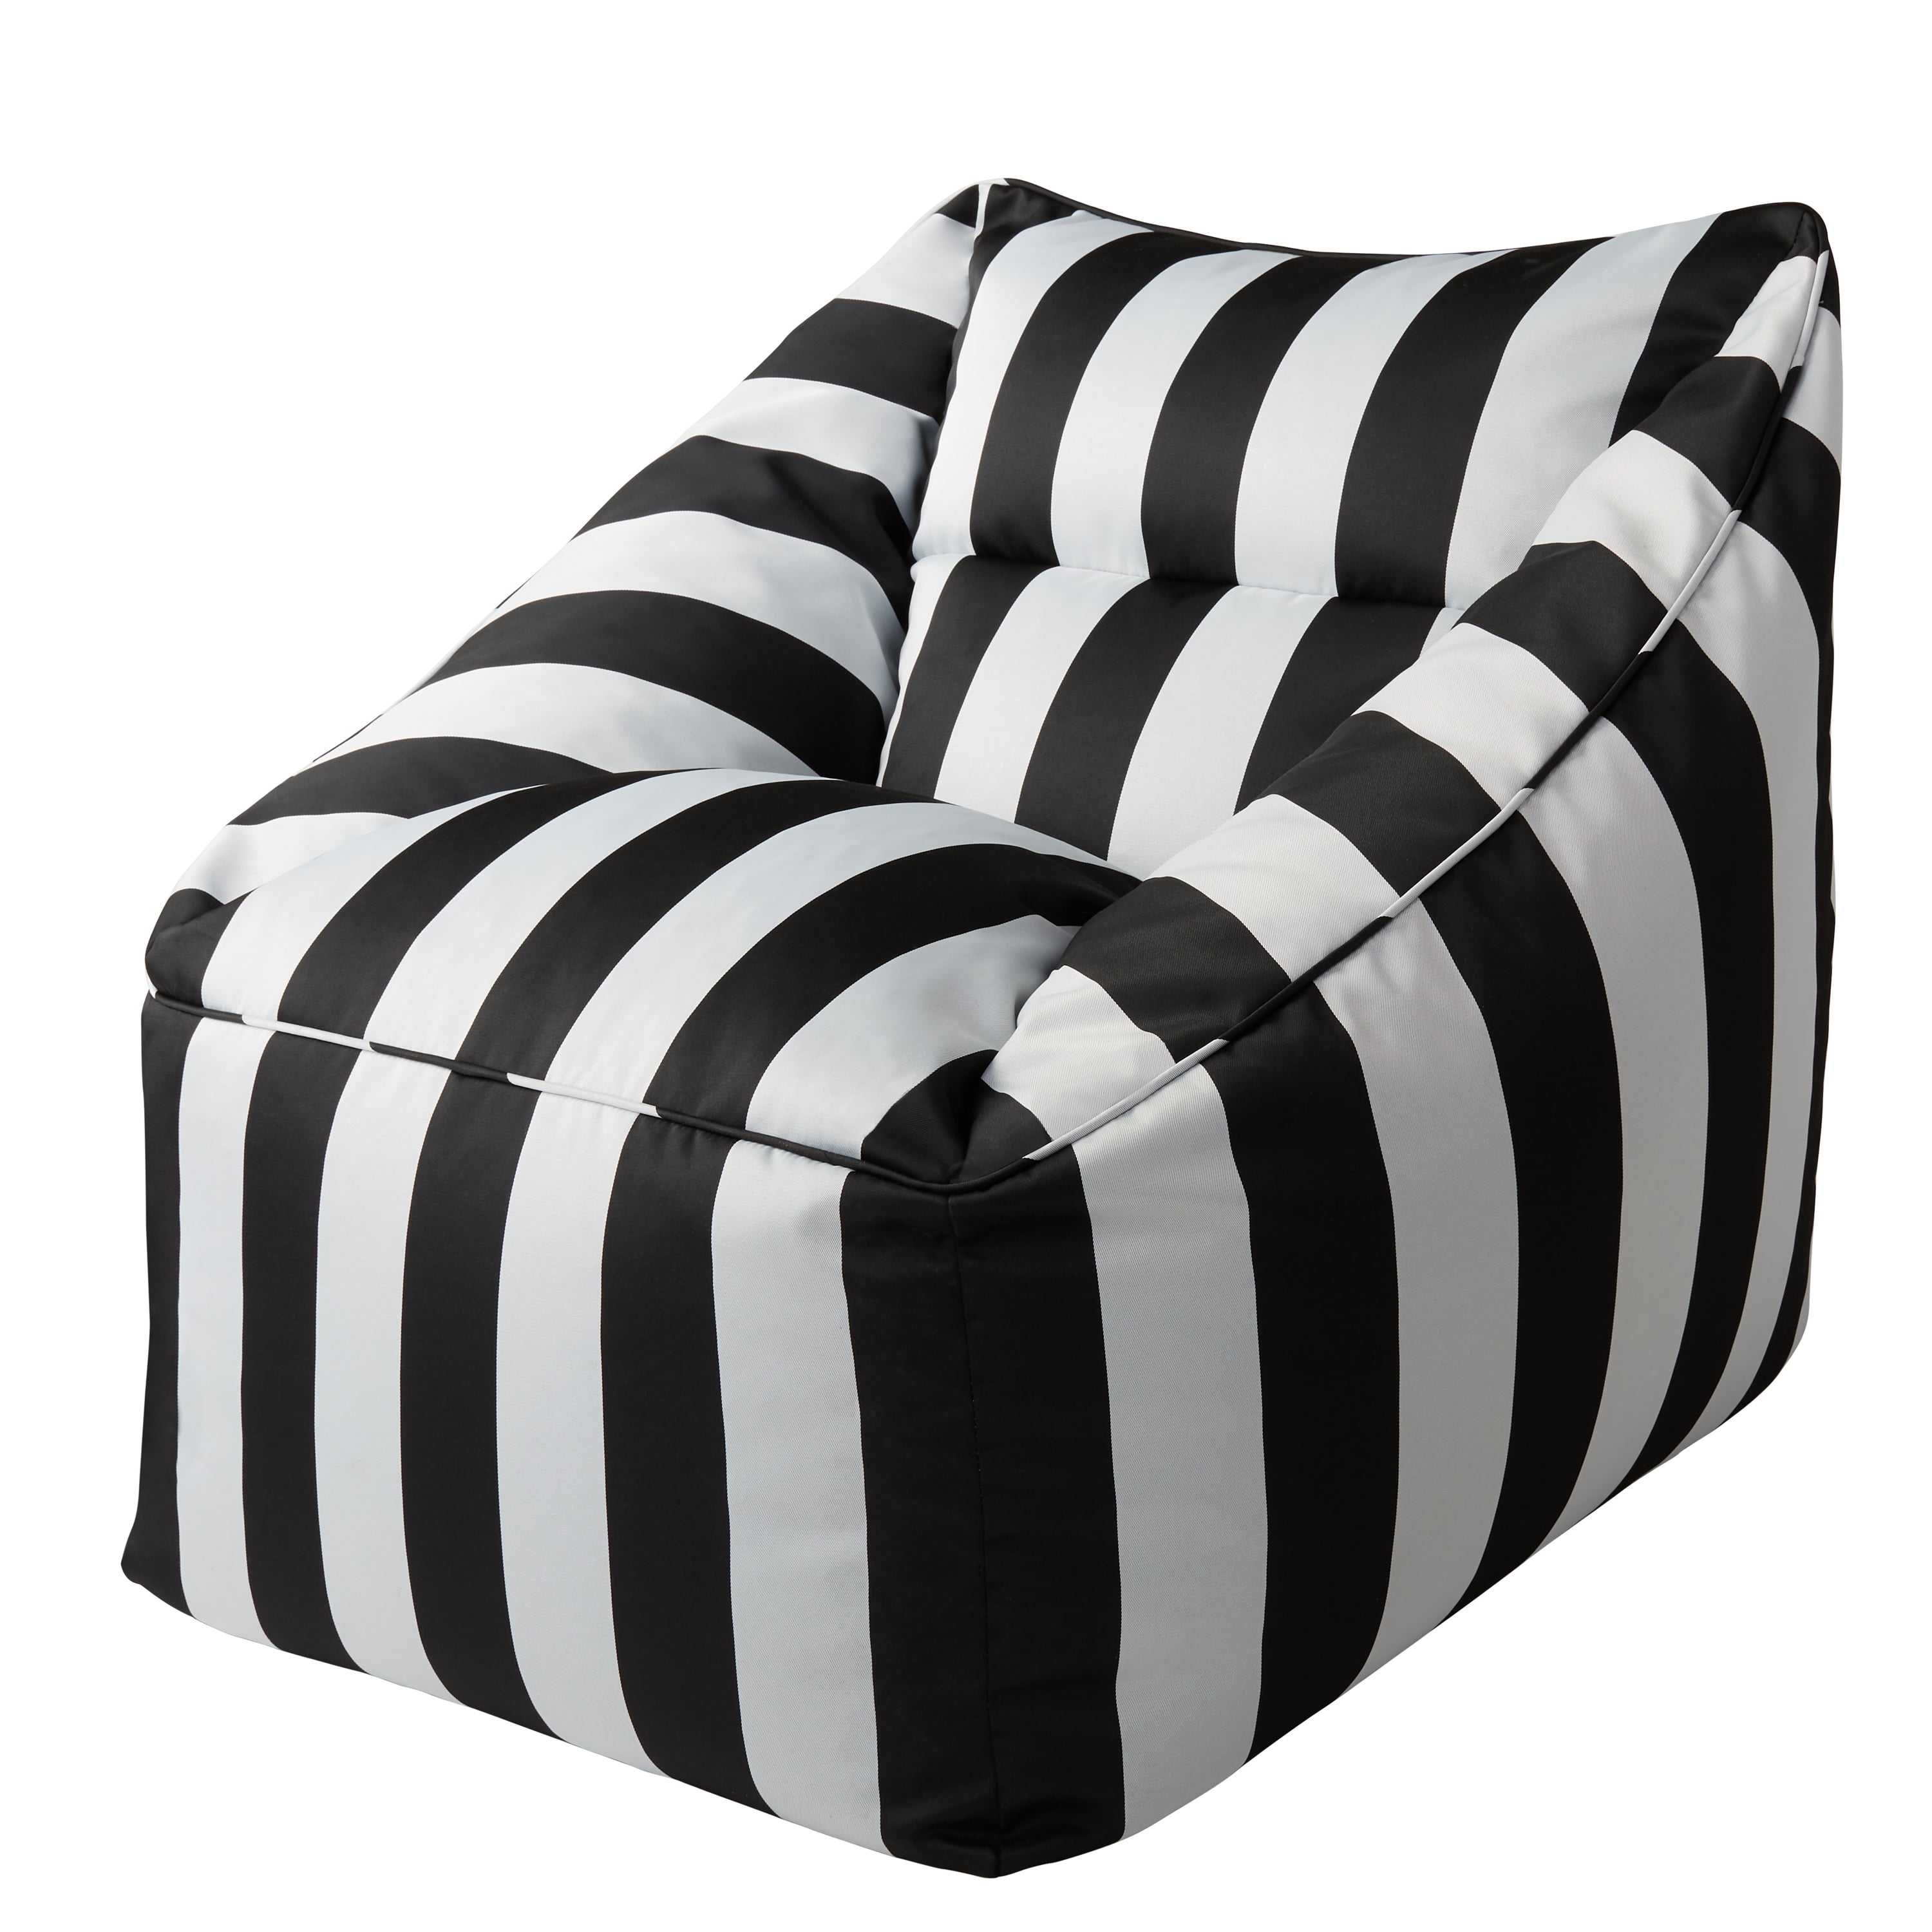 Unique Black And White Striped Patio Furniture for Simple Design